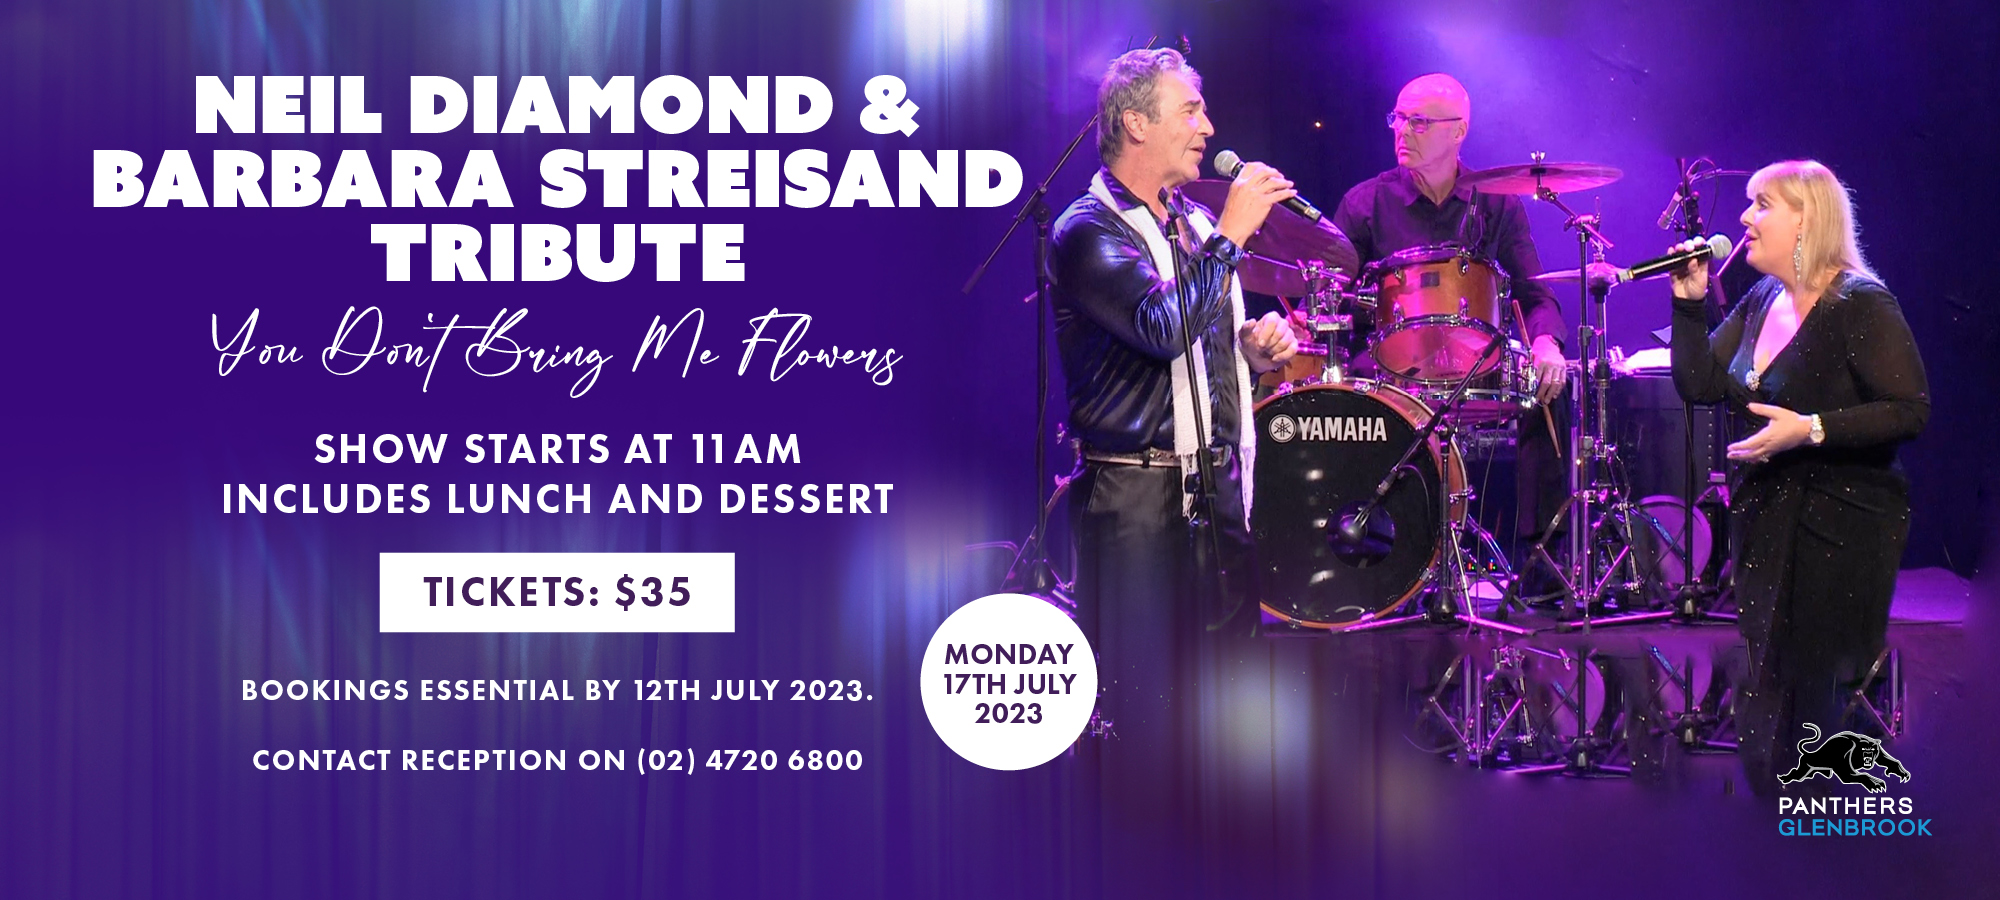 Neil Diamond & Barbara Streisand Tribute Show